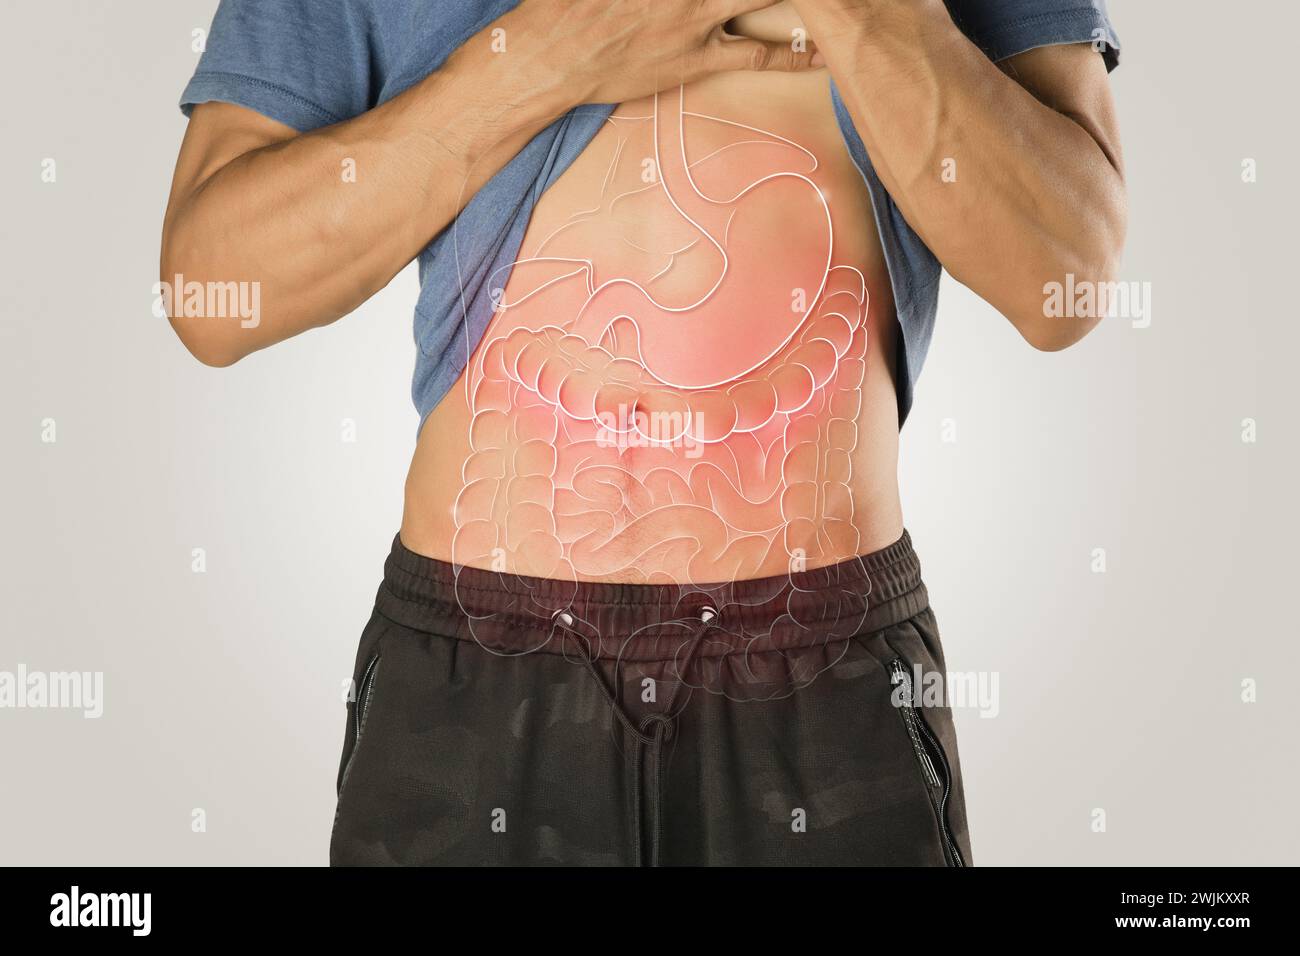 Ilustración de órgano interno en el cuerpo masculino contra un fondo gris claro. Hígado, estómago, intestino delgado, intestino grueso, intestino delgado. Foto de stock